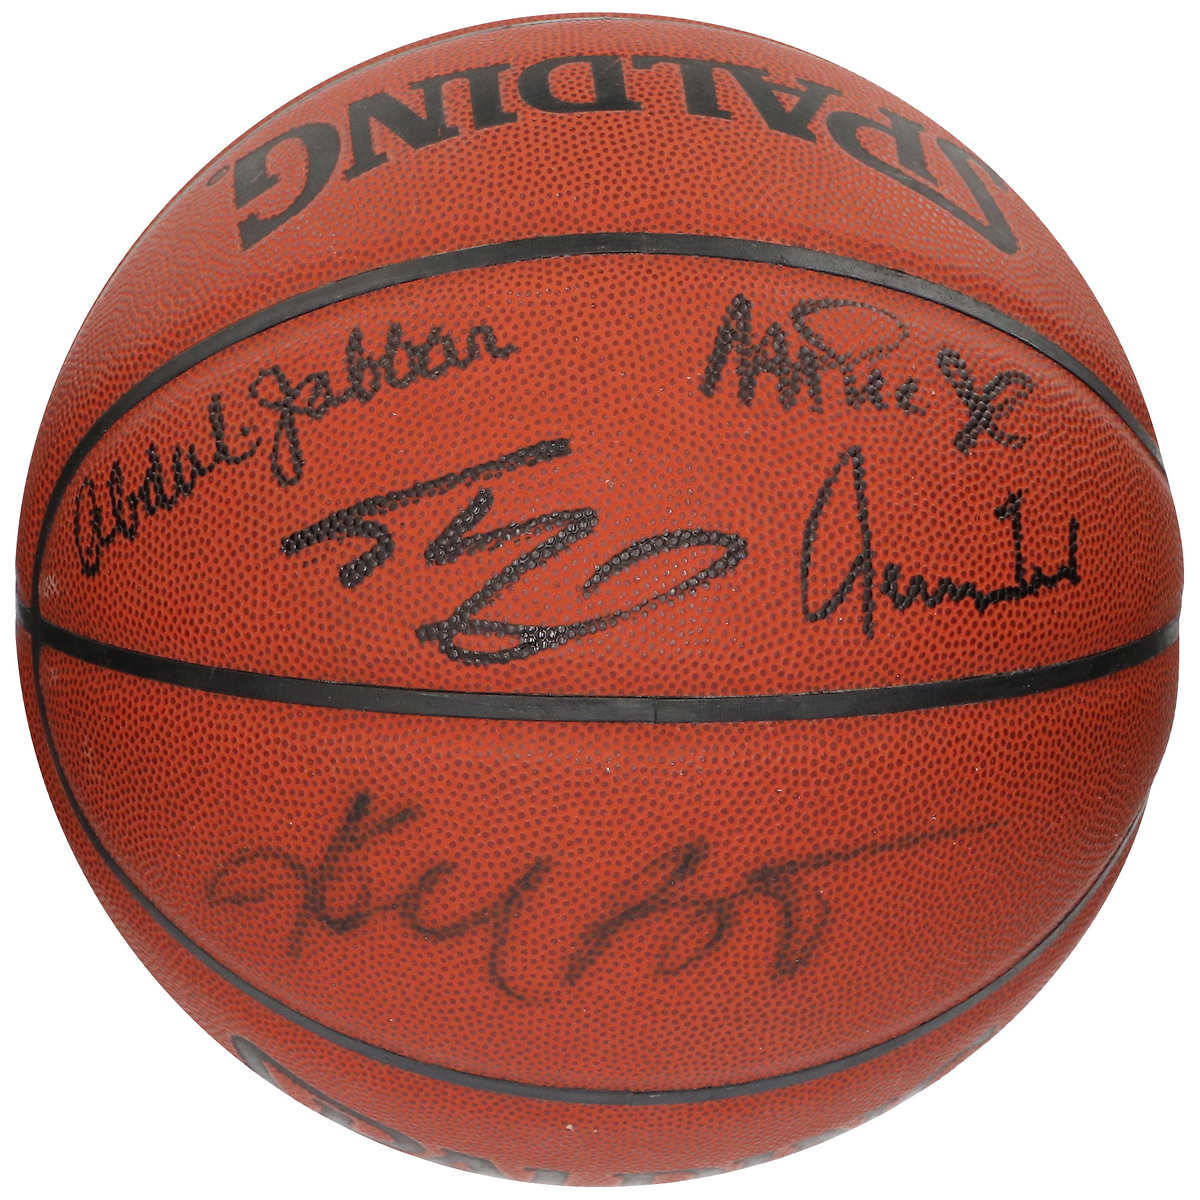 Spalding Signature Series Autograph Four White Panel Basketballs 2 Pack Bundle 